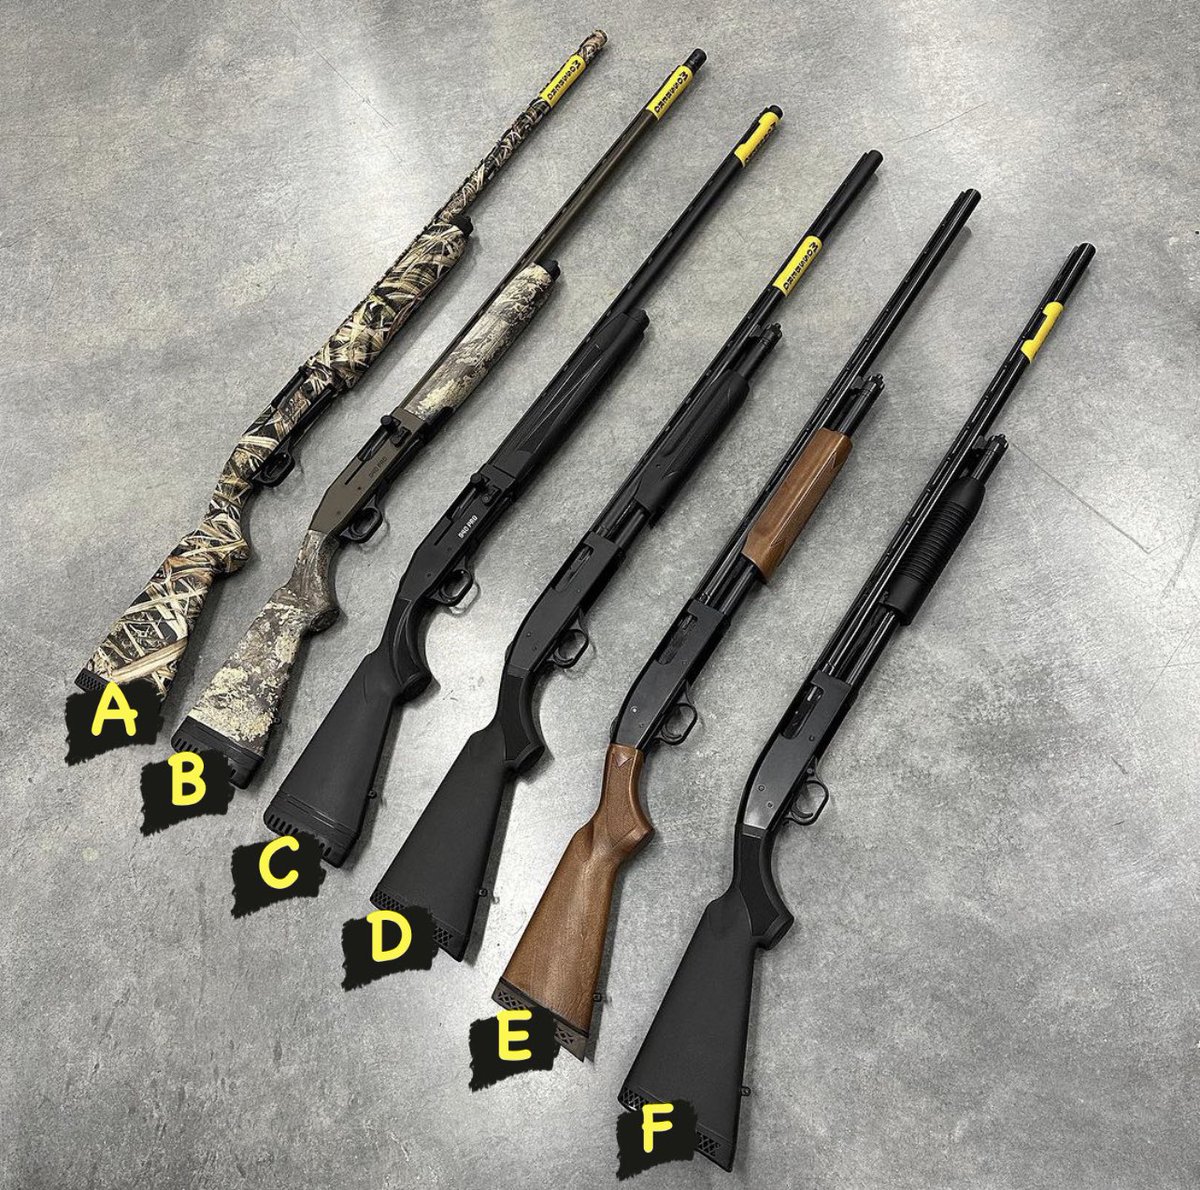 Take your pick! #mossberg #shotgun